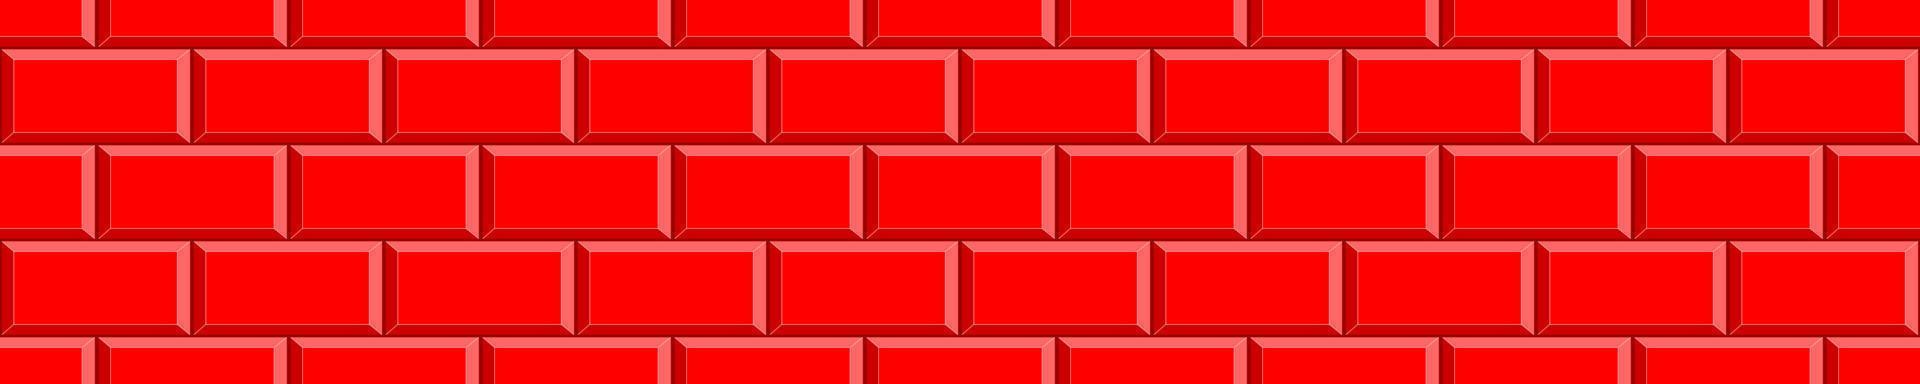 rood steen muur naadloos patroon. keuken of badkamer metro tegel ontwerp. meetkundig achtergrond vector